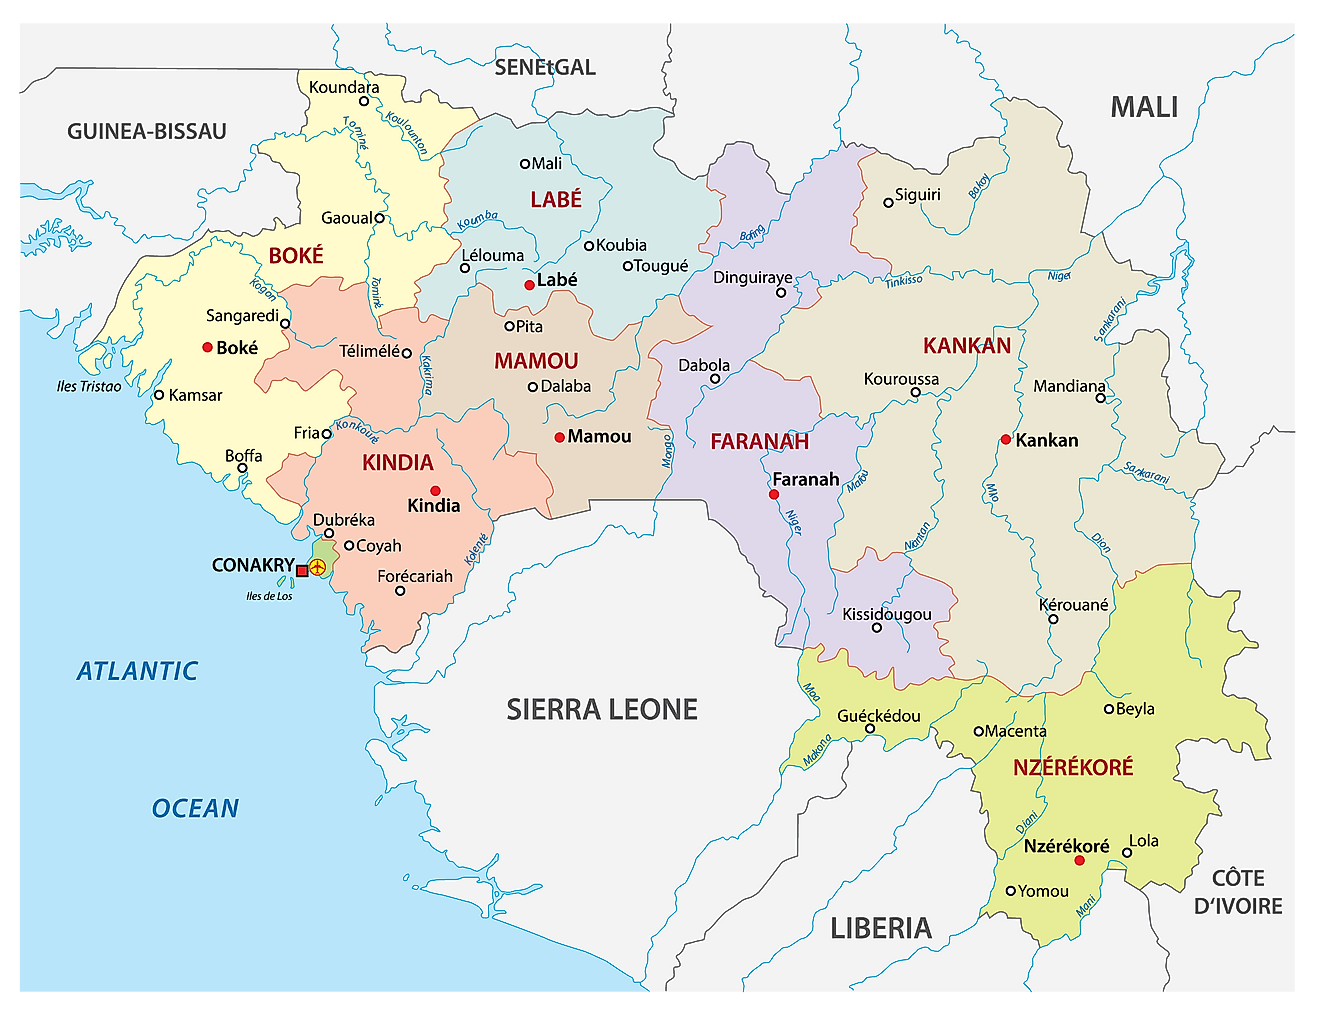 Mapa político de Guinea que muestra las siete regiones administrativas, sus capitales y la capital nacional de Conakry.